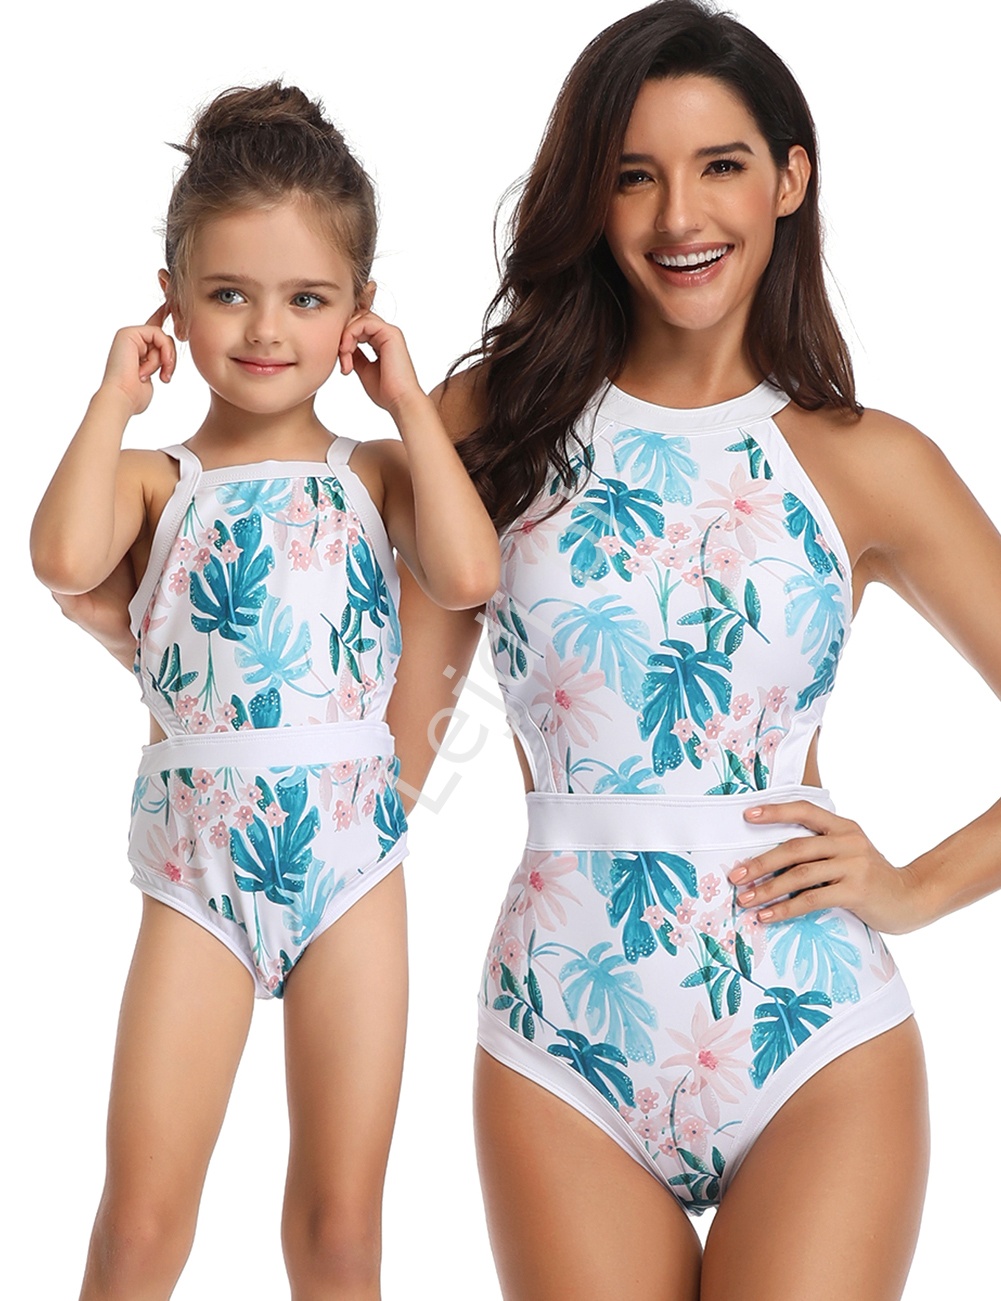 Jednoczęściowy strój kąpielowy dla mamy i córki na plaże i basen